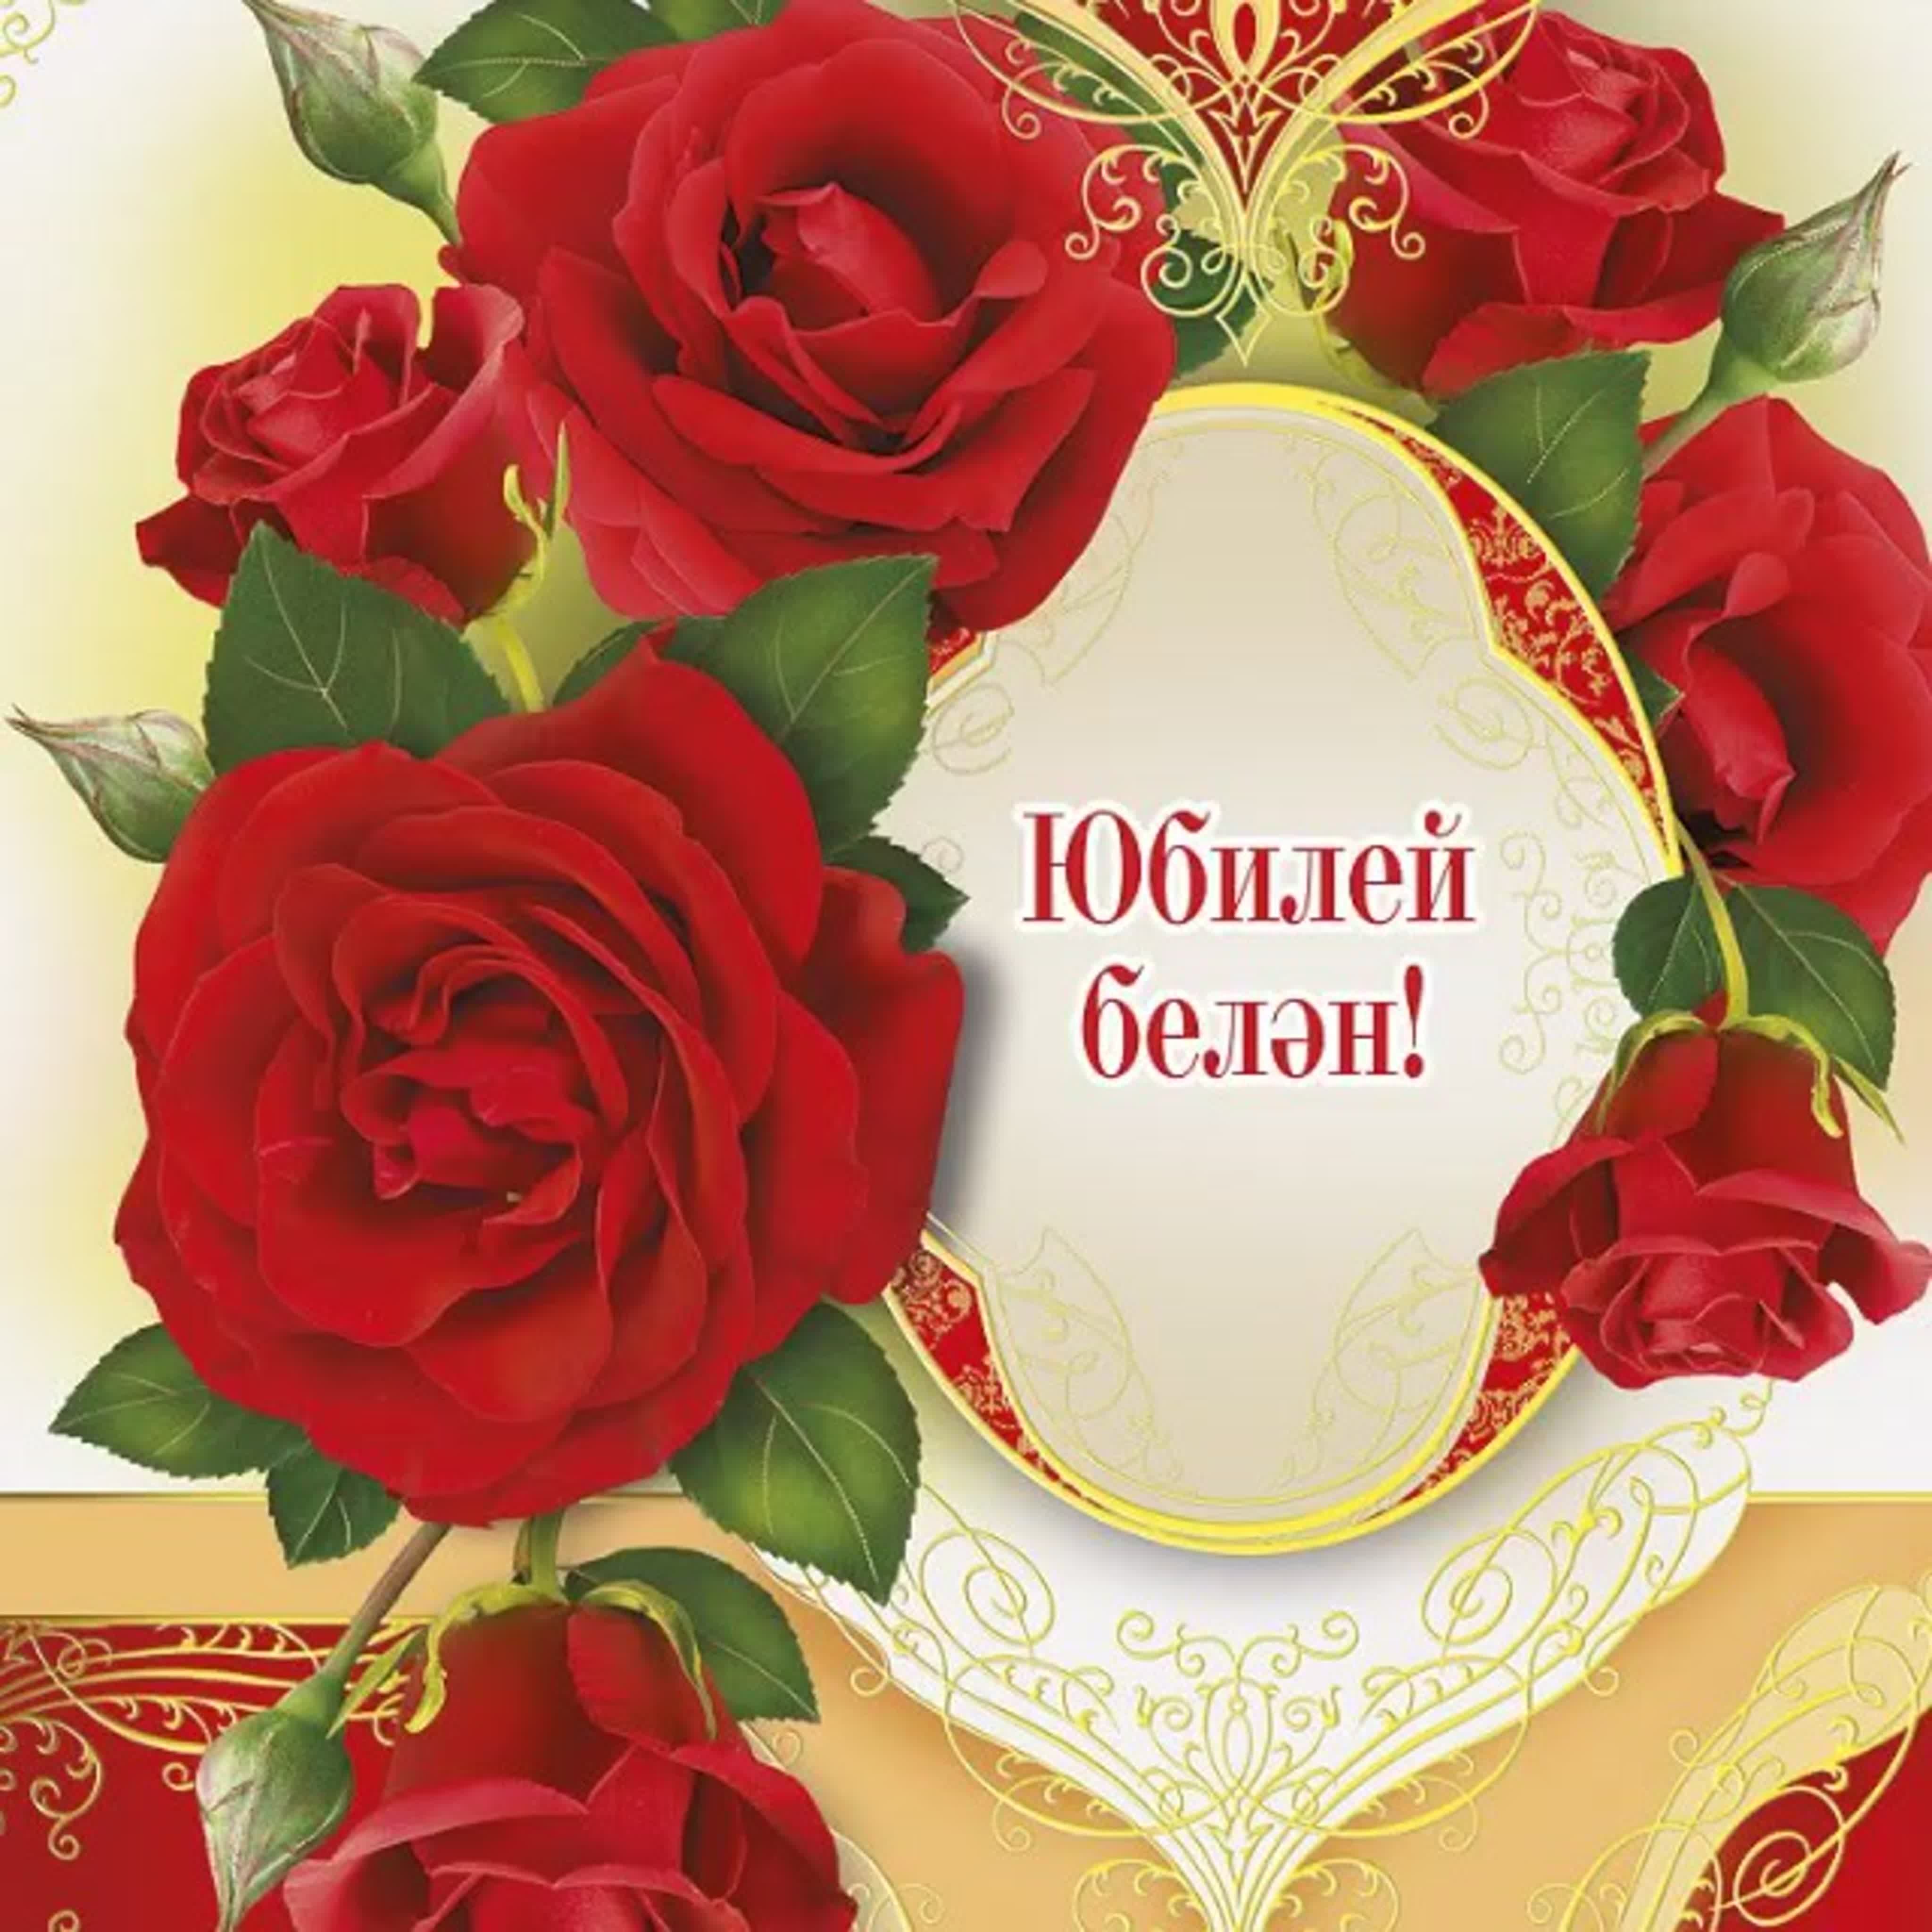 Открытка днем рождения женщине на татарском языке. Поздравление на татарском языке. Поздравления с днём рождения на татарском языке. Поздравление с юбилеем женщине на татарском языке. Татарские поздравления с днем рождения.